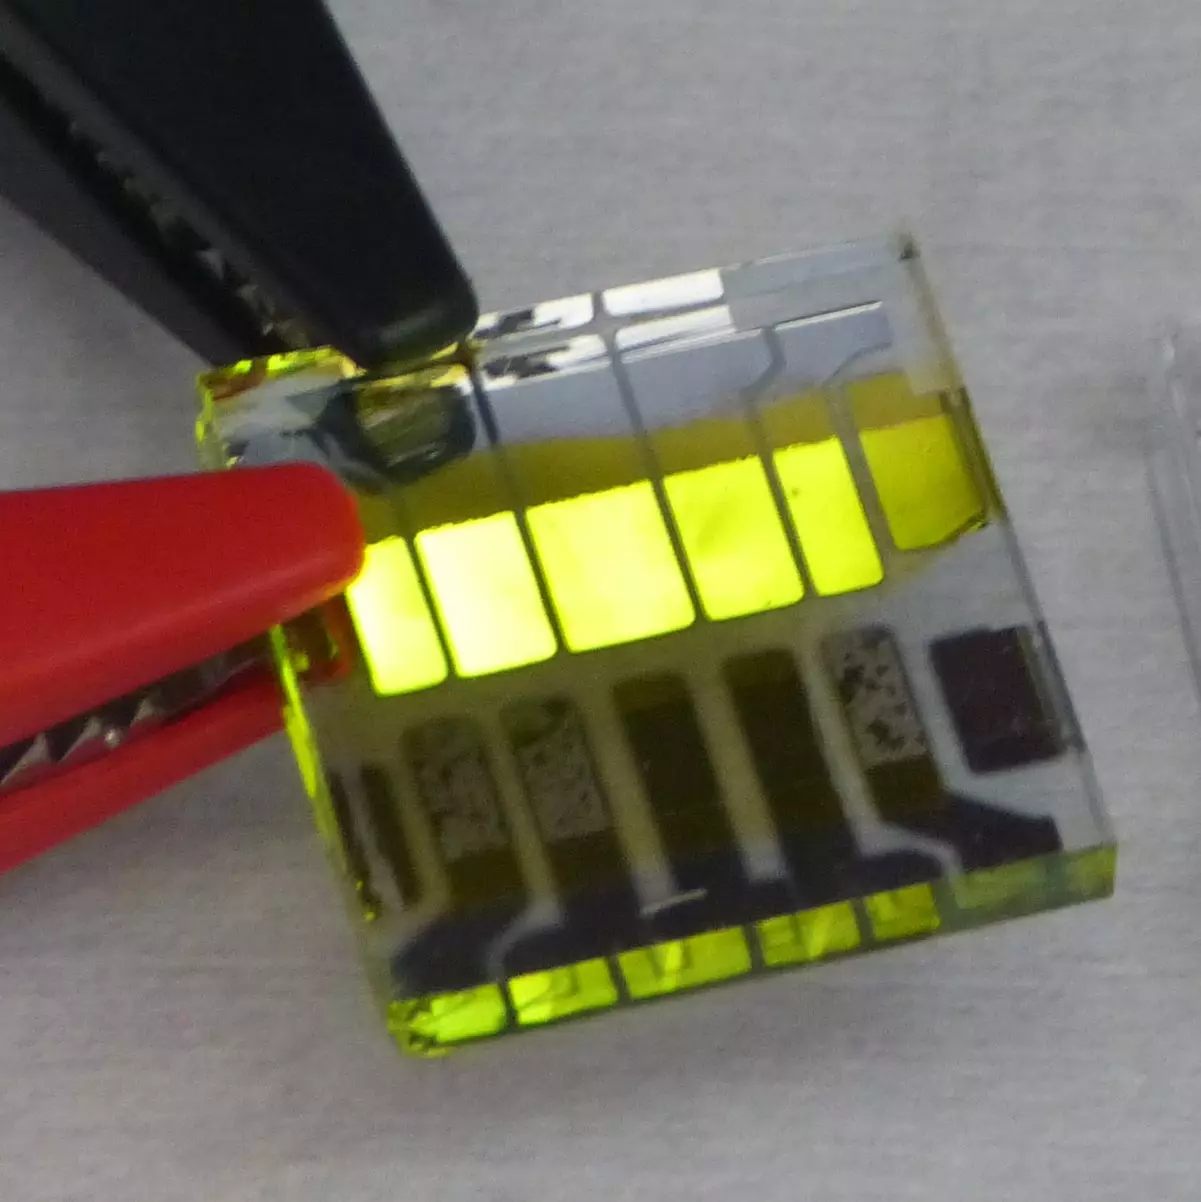 Das Bild zeigt ein Glas Substrat auf dem 5 OLEDs leuchten